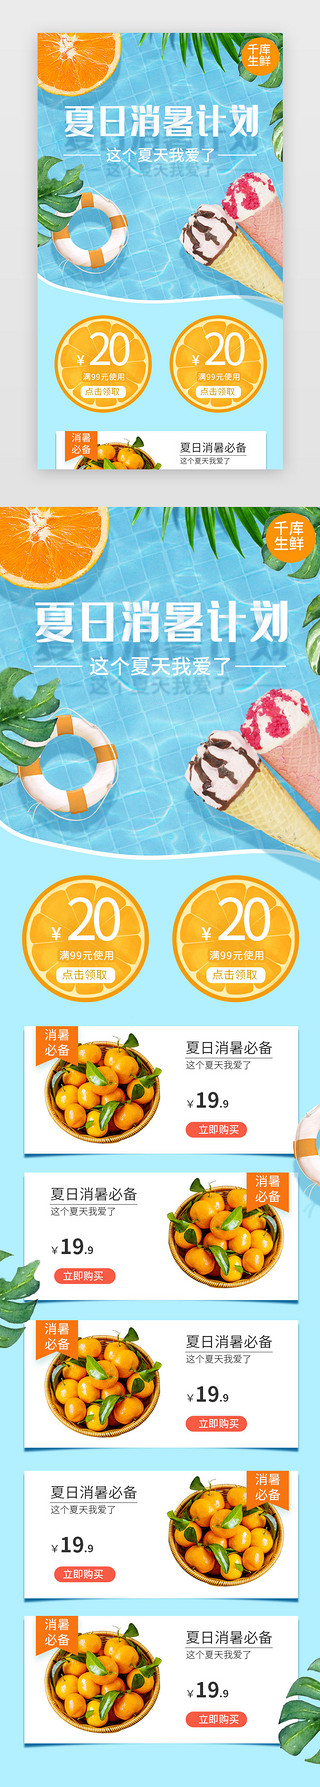 蓝天白云夏日UI设计素材_电商蓝色清新夏日水果生鲜夏季促销H5长图